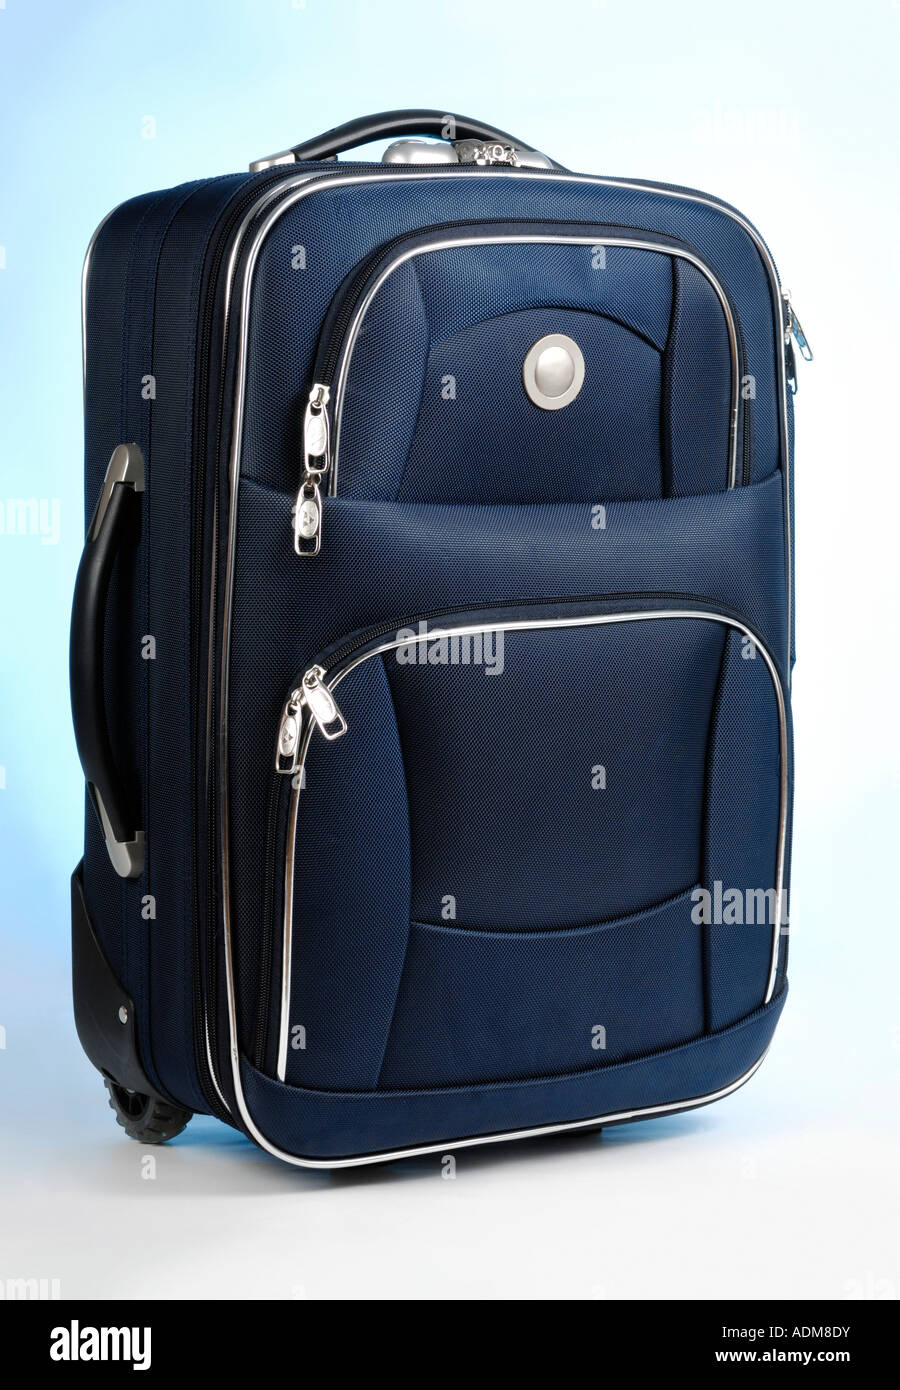 Valise de voyage bleu découpe isolés sac bagages Bagages Banque D'Images